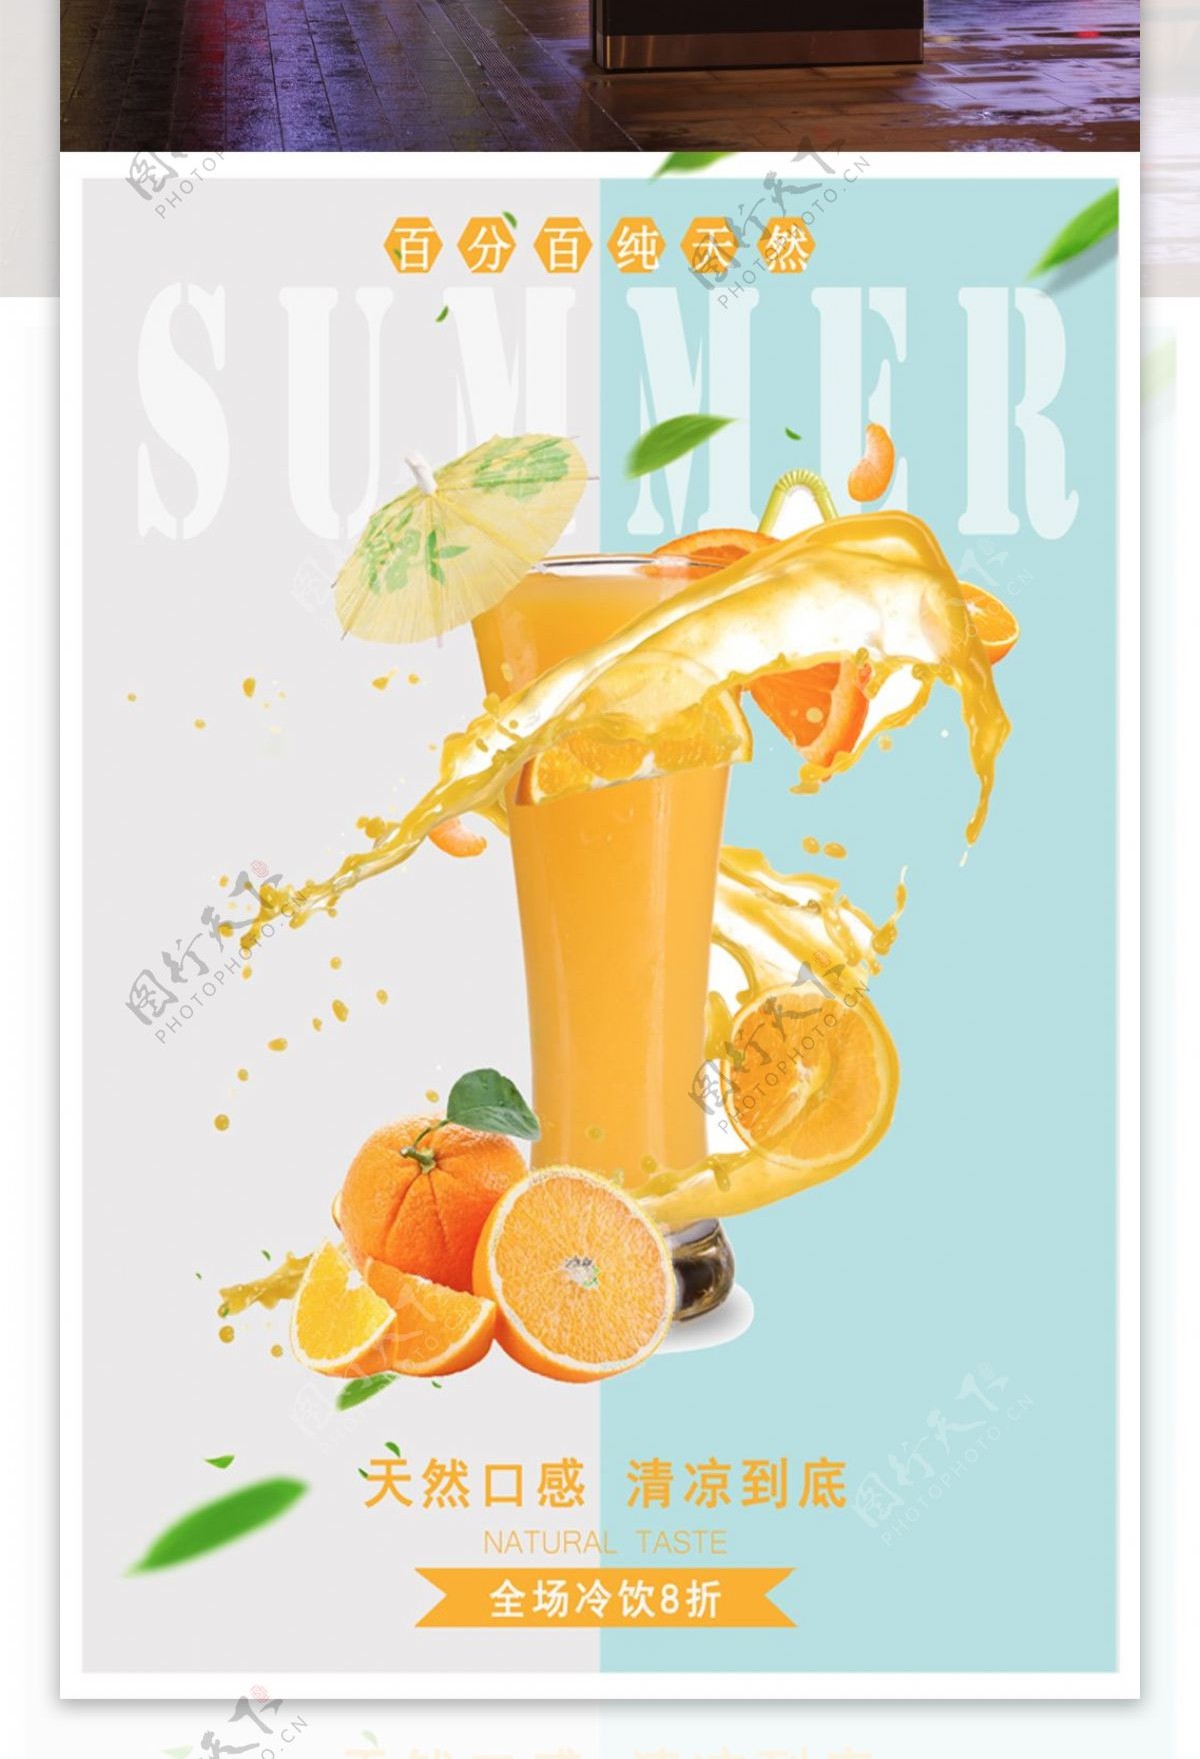 夏季橙子冷饮饮料店果汁店促销海报设计